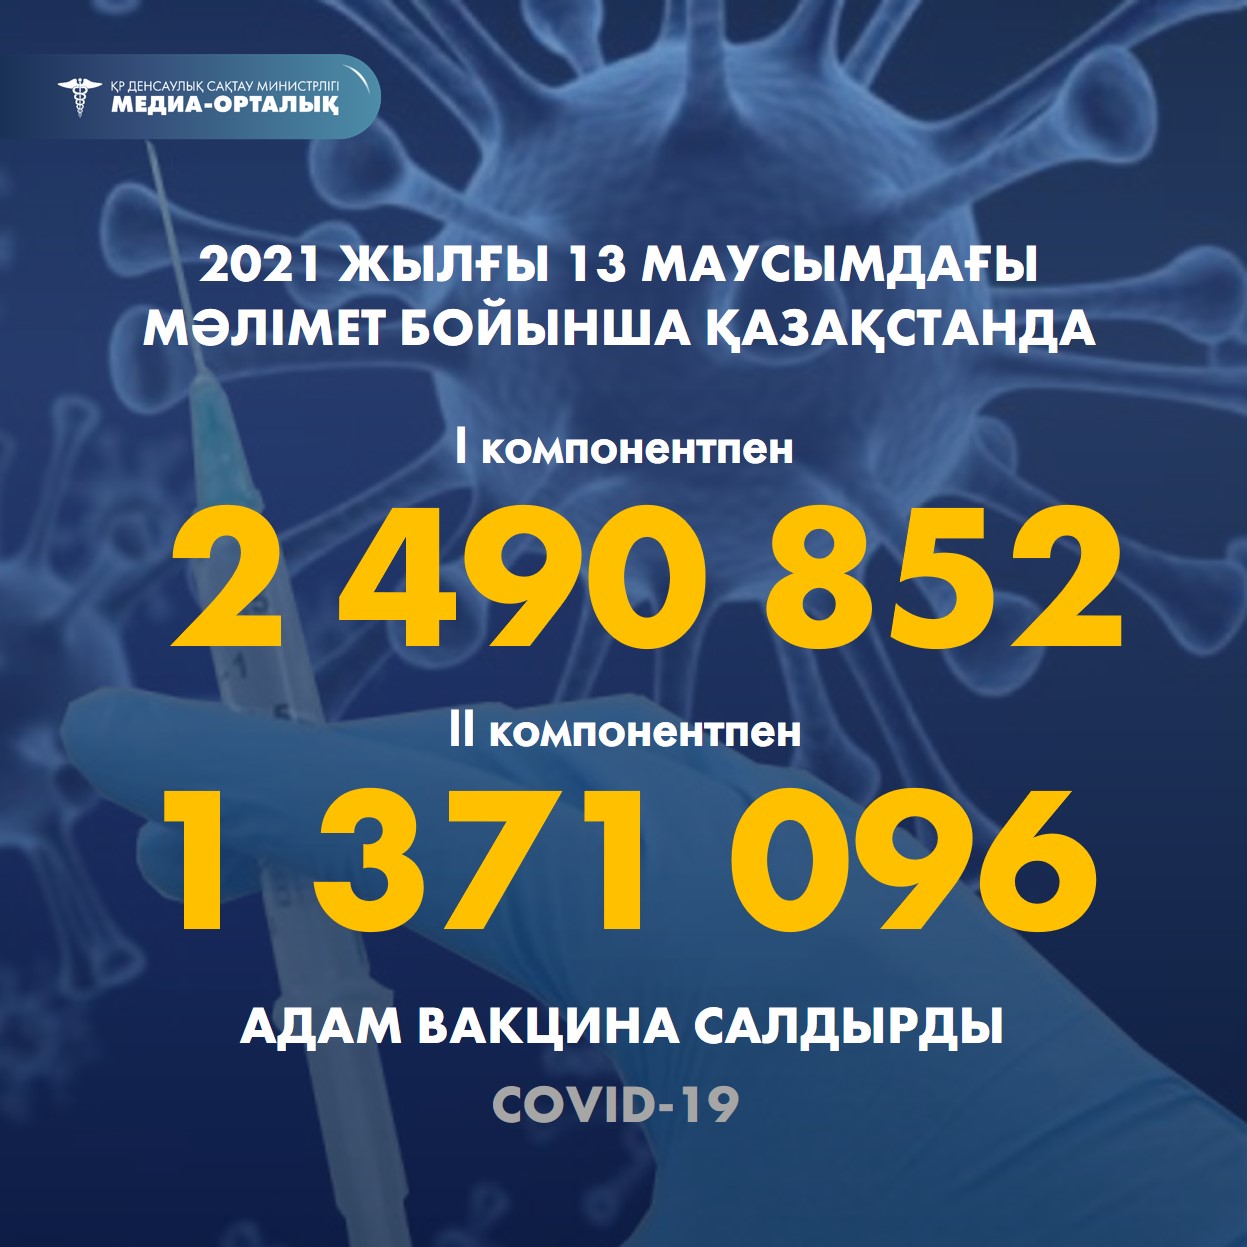 2021 жылғы 13 маусымдағы мәлімет бойынша Қазақстанда I компонентпен 2 490 852 адам вакцина салдырды, II компонентпен 1 371 096 адам.